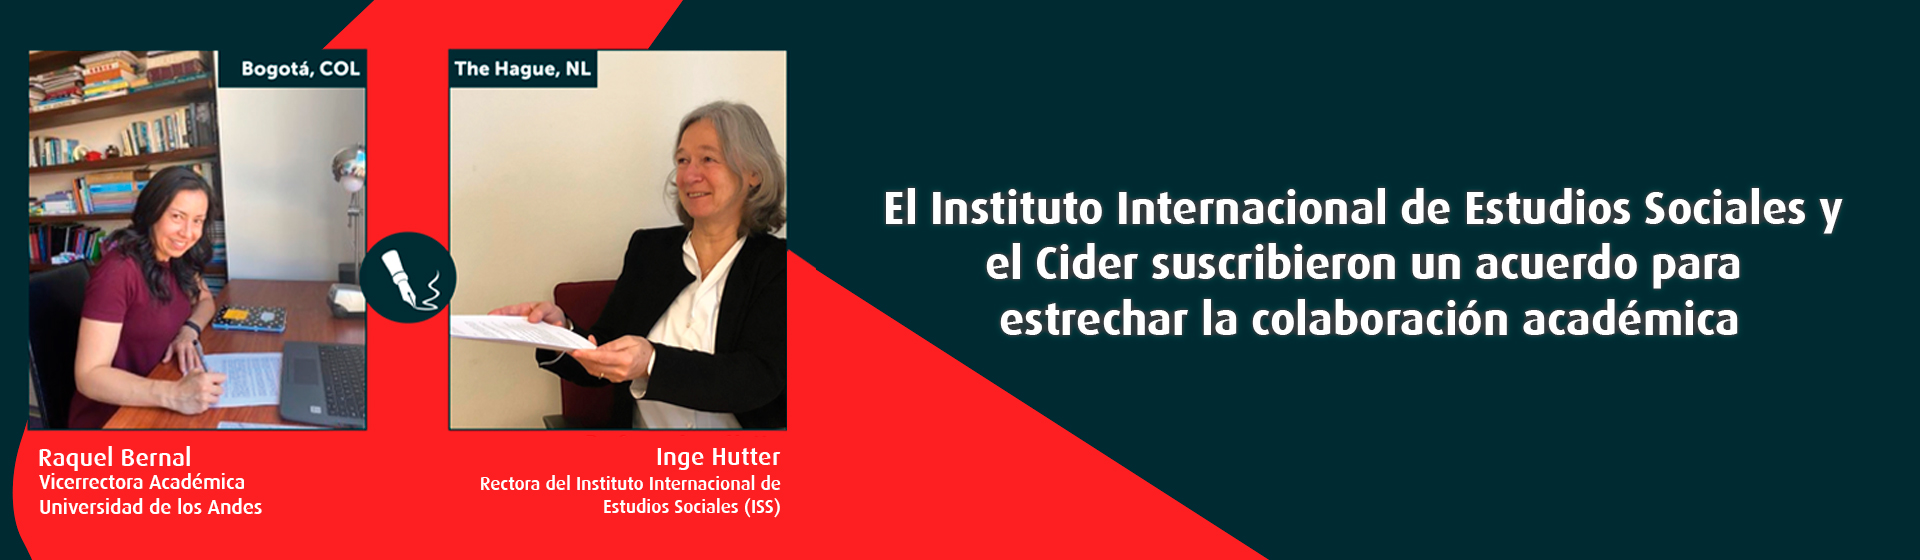 El Instituto Internacional de Estudios Sociales y el Cider suscribieron un acuerdo para estrechar la colaboración académica- Cider | Uniandes